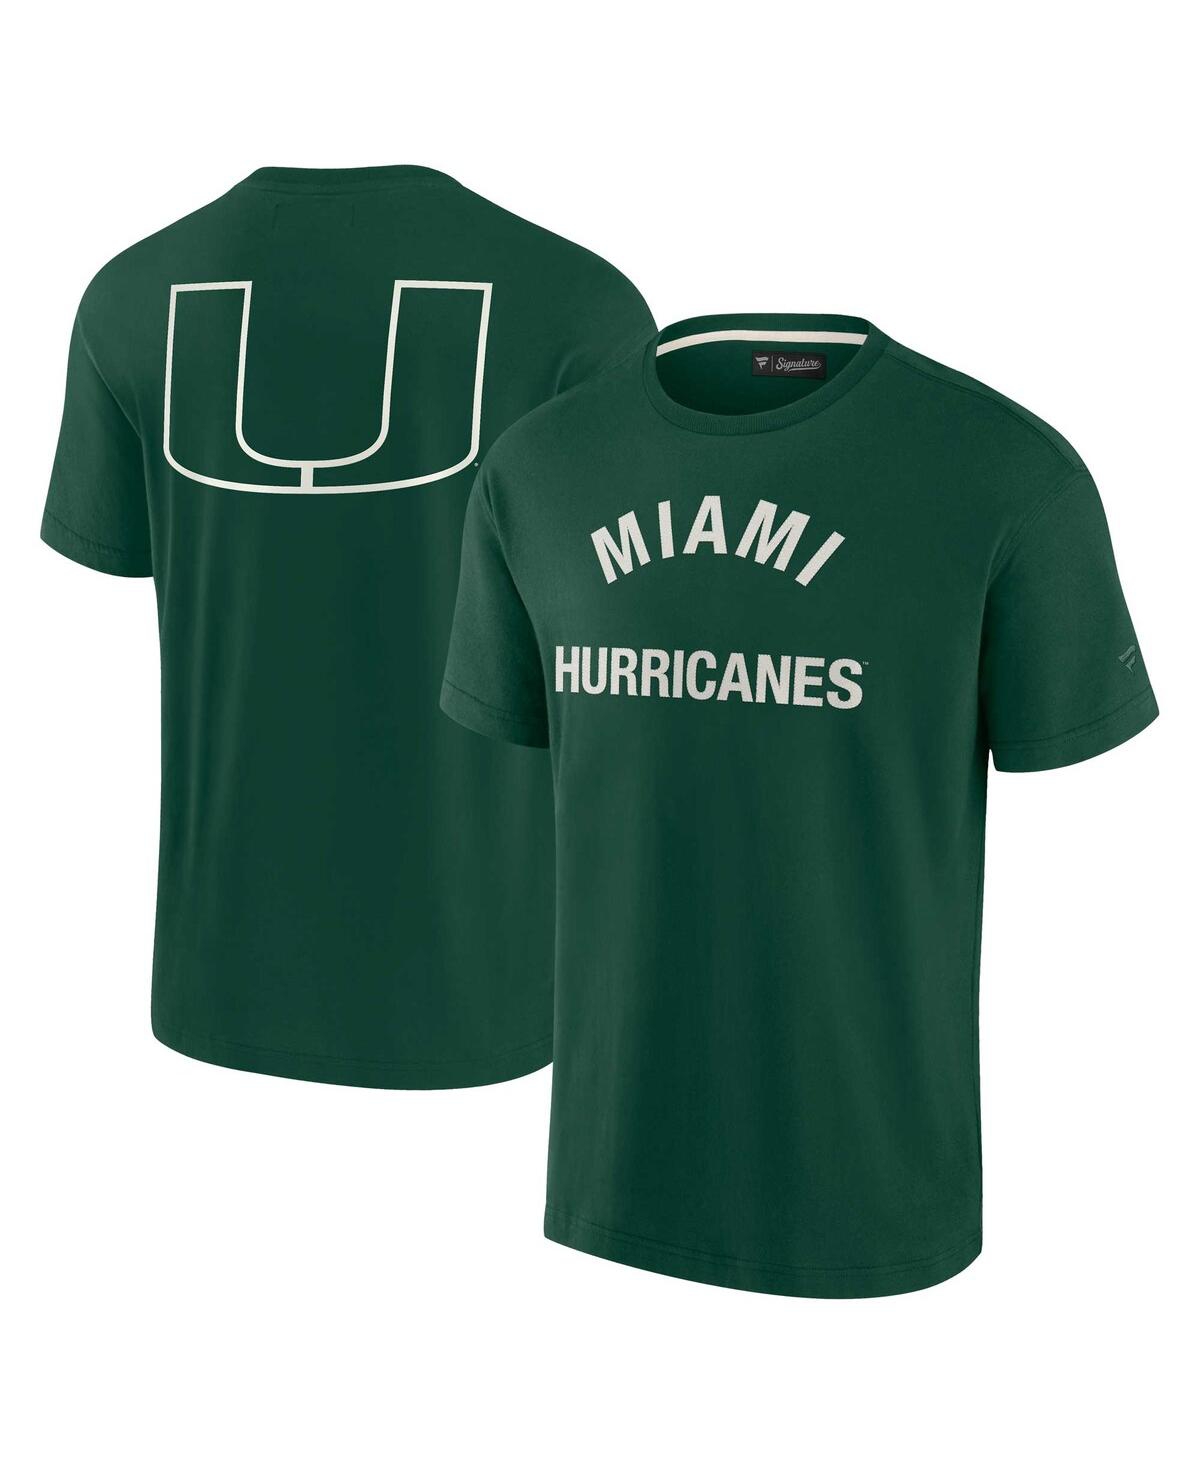 Fanatics Signature Men's And Women's  Green Miami Hurricanes Super Soft Short Sleeve T-shirt